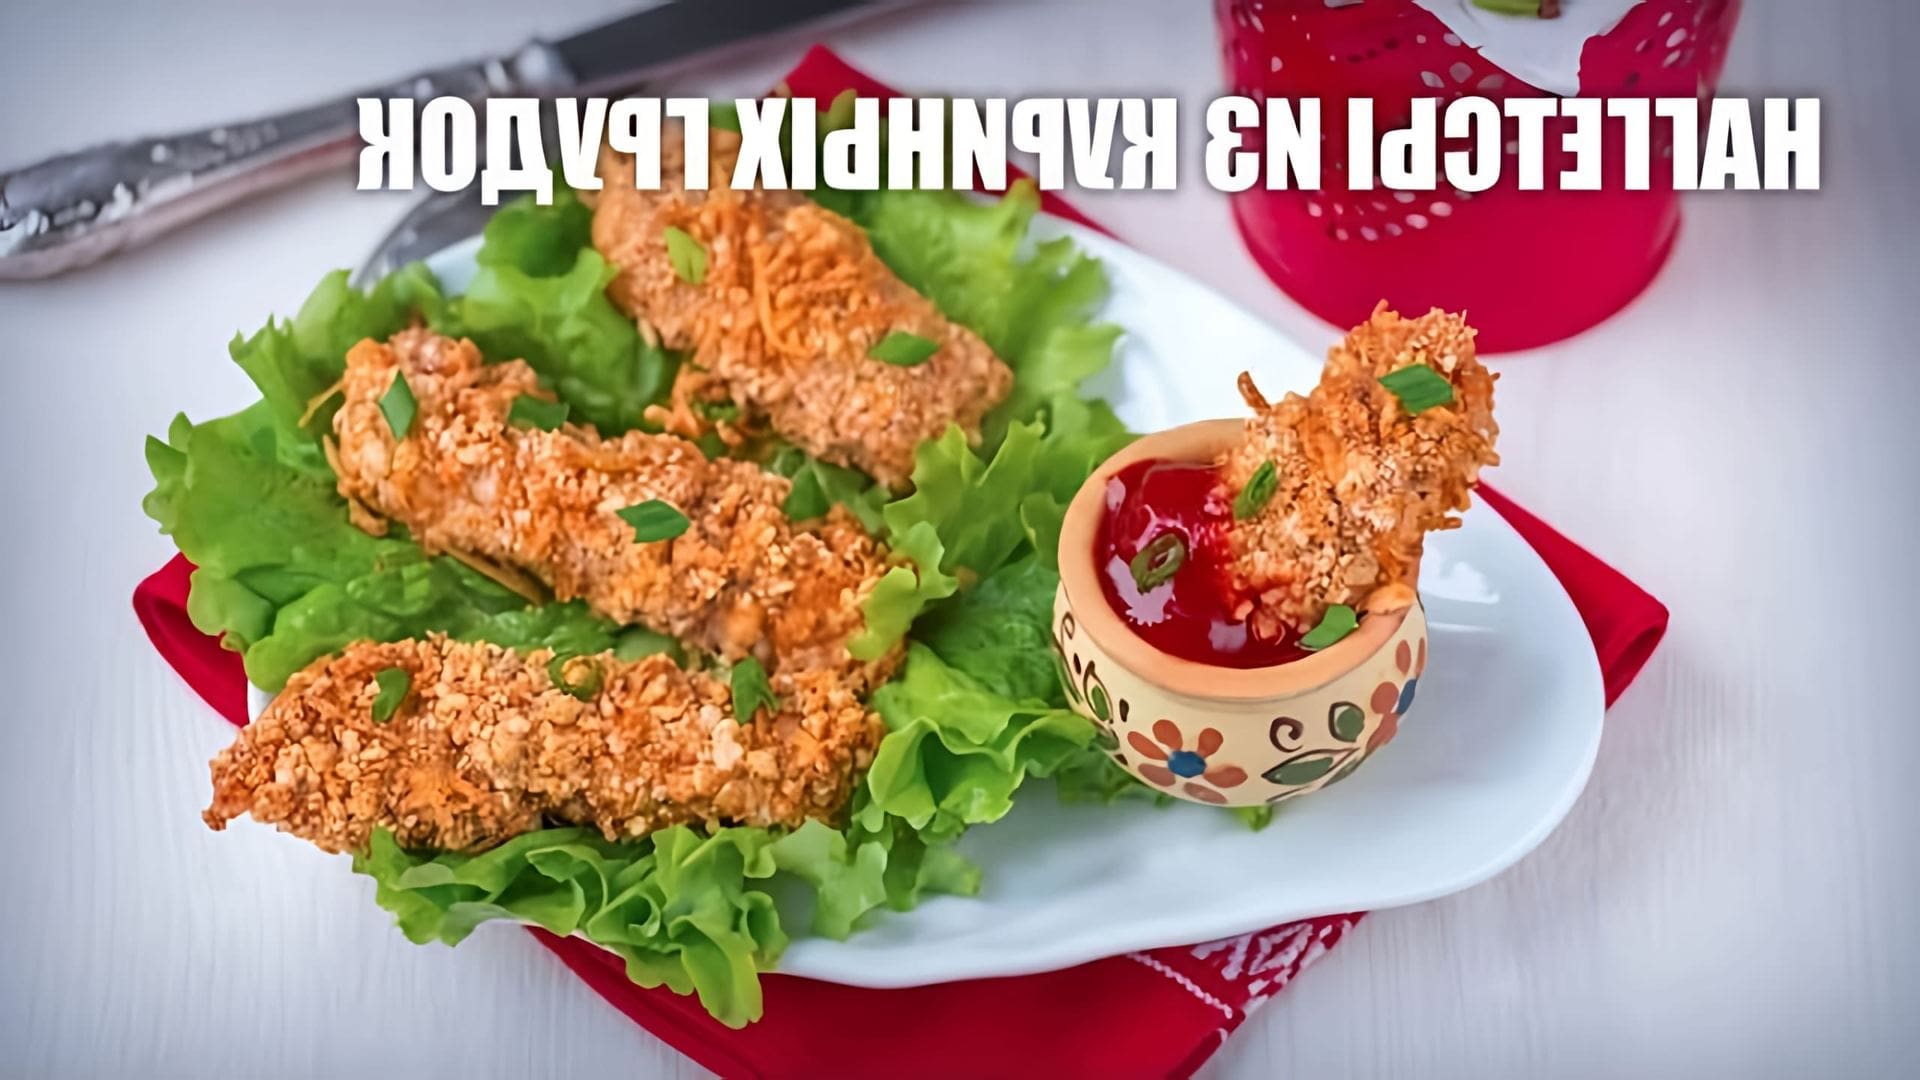 В этом видео демонстрируется рецепт приготовления наггетсов из куриных грудок